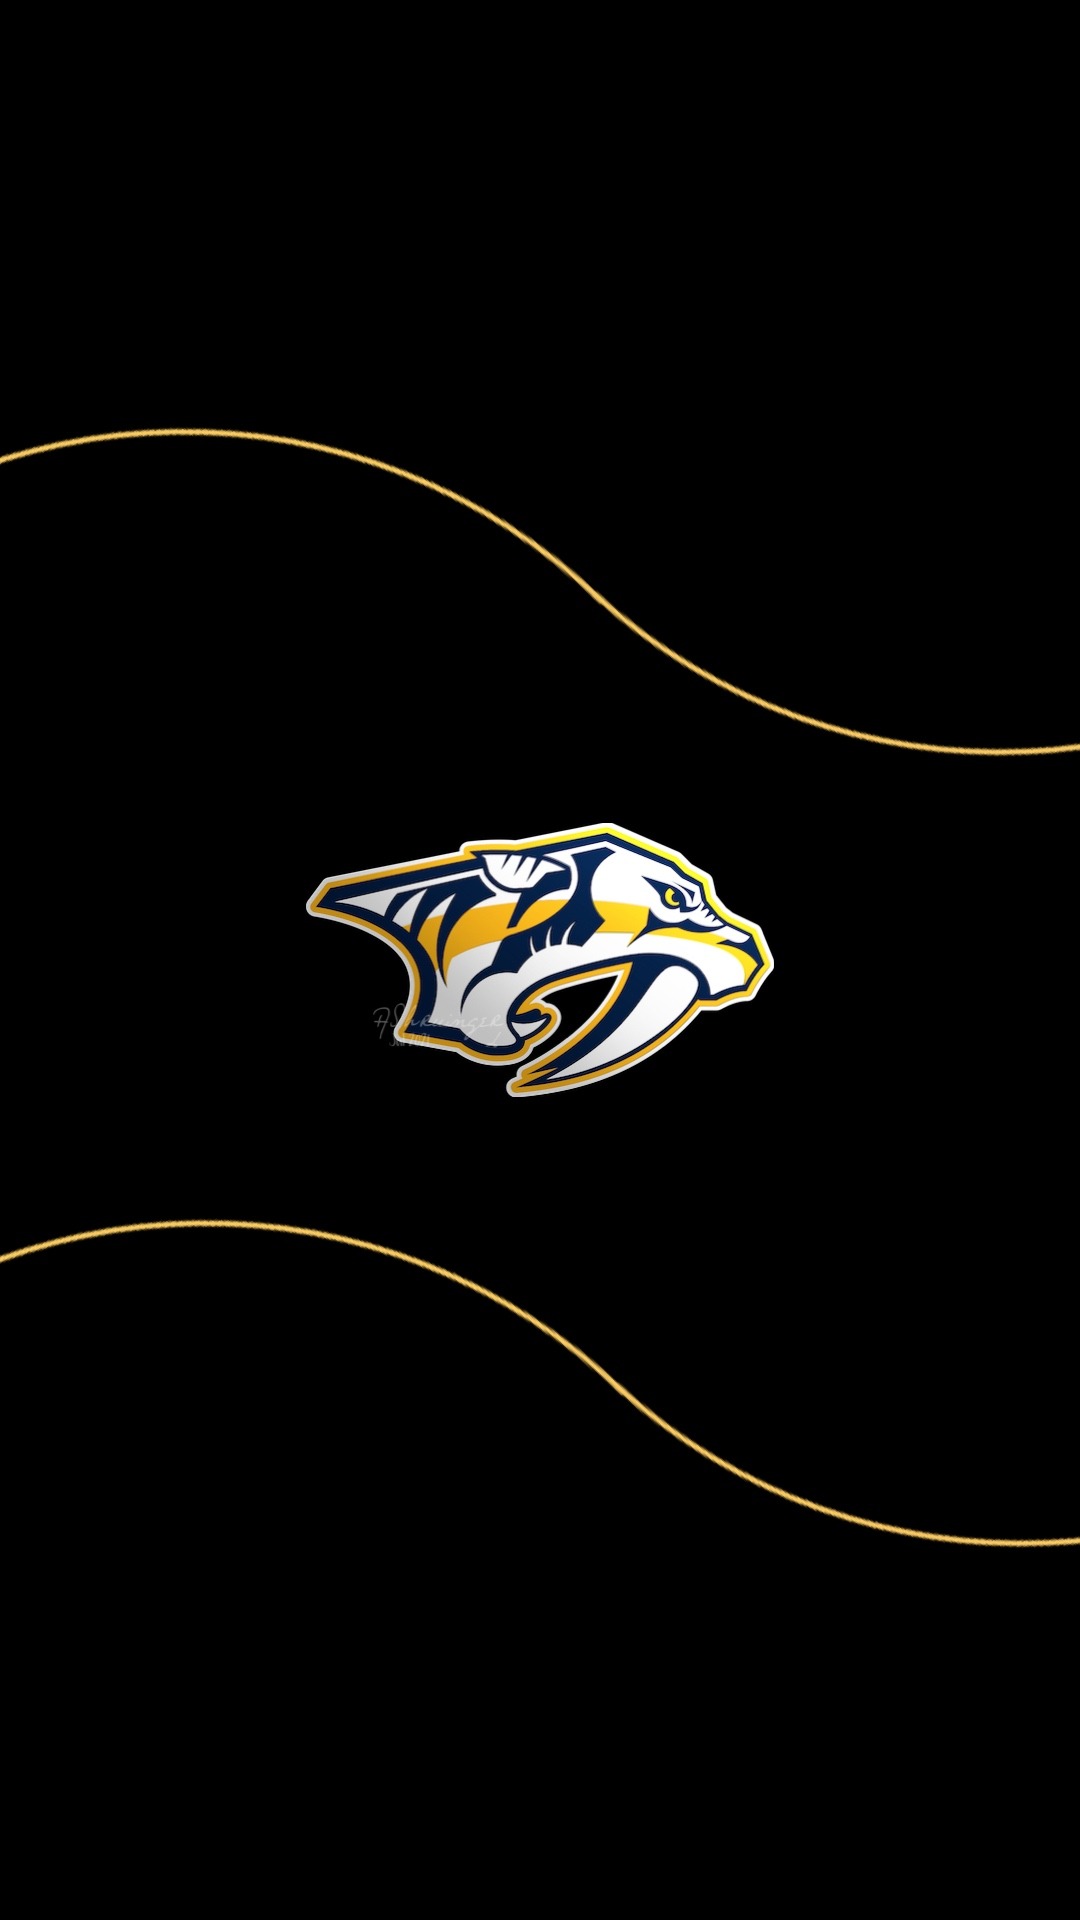 Nashville Predators (NHL) iPhone X/XS/XR/11 PRO Lock Scree…